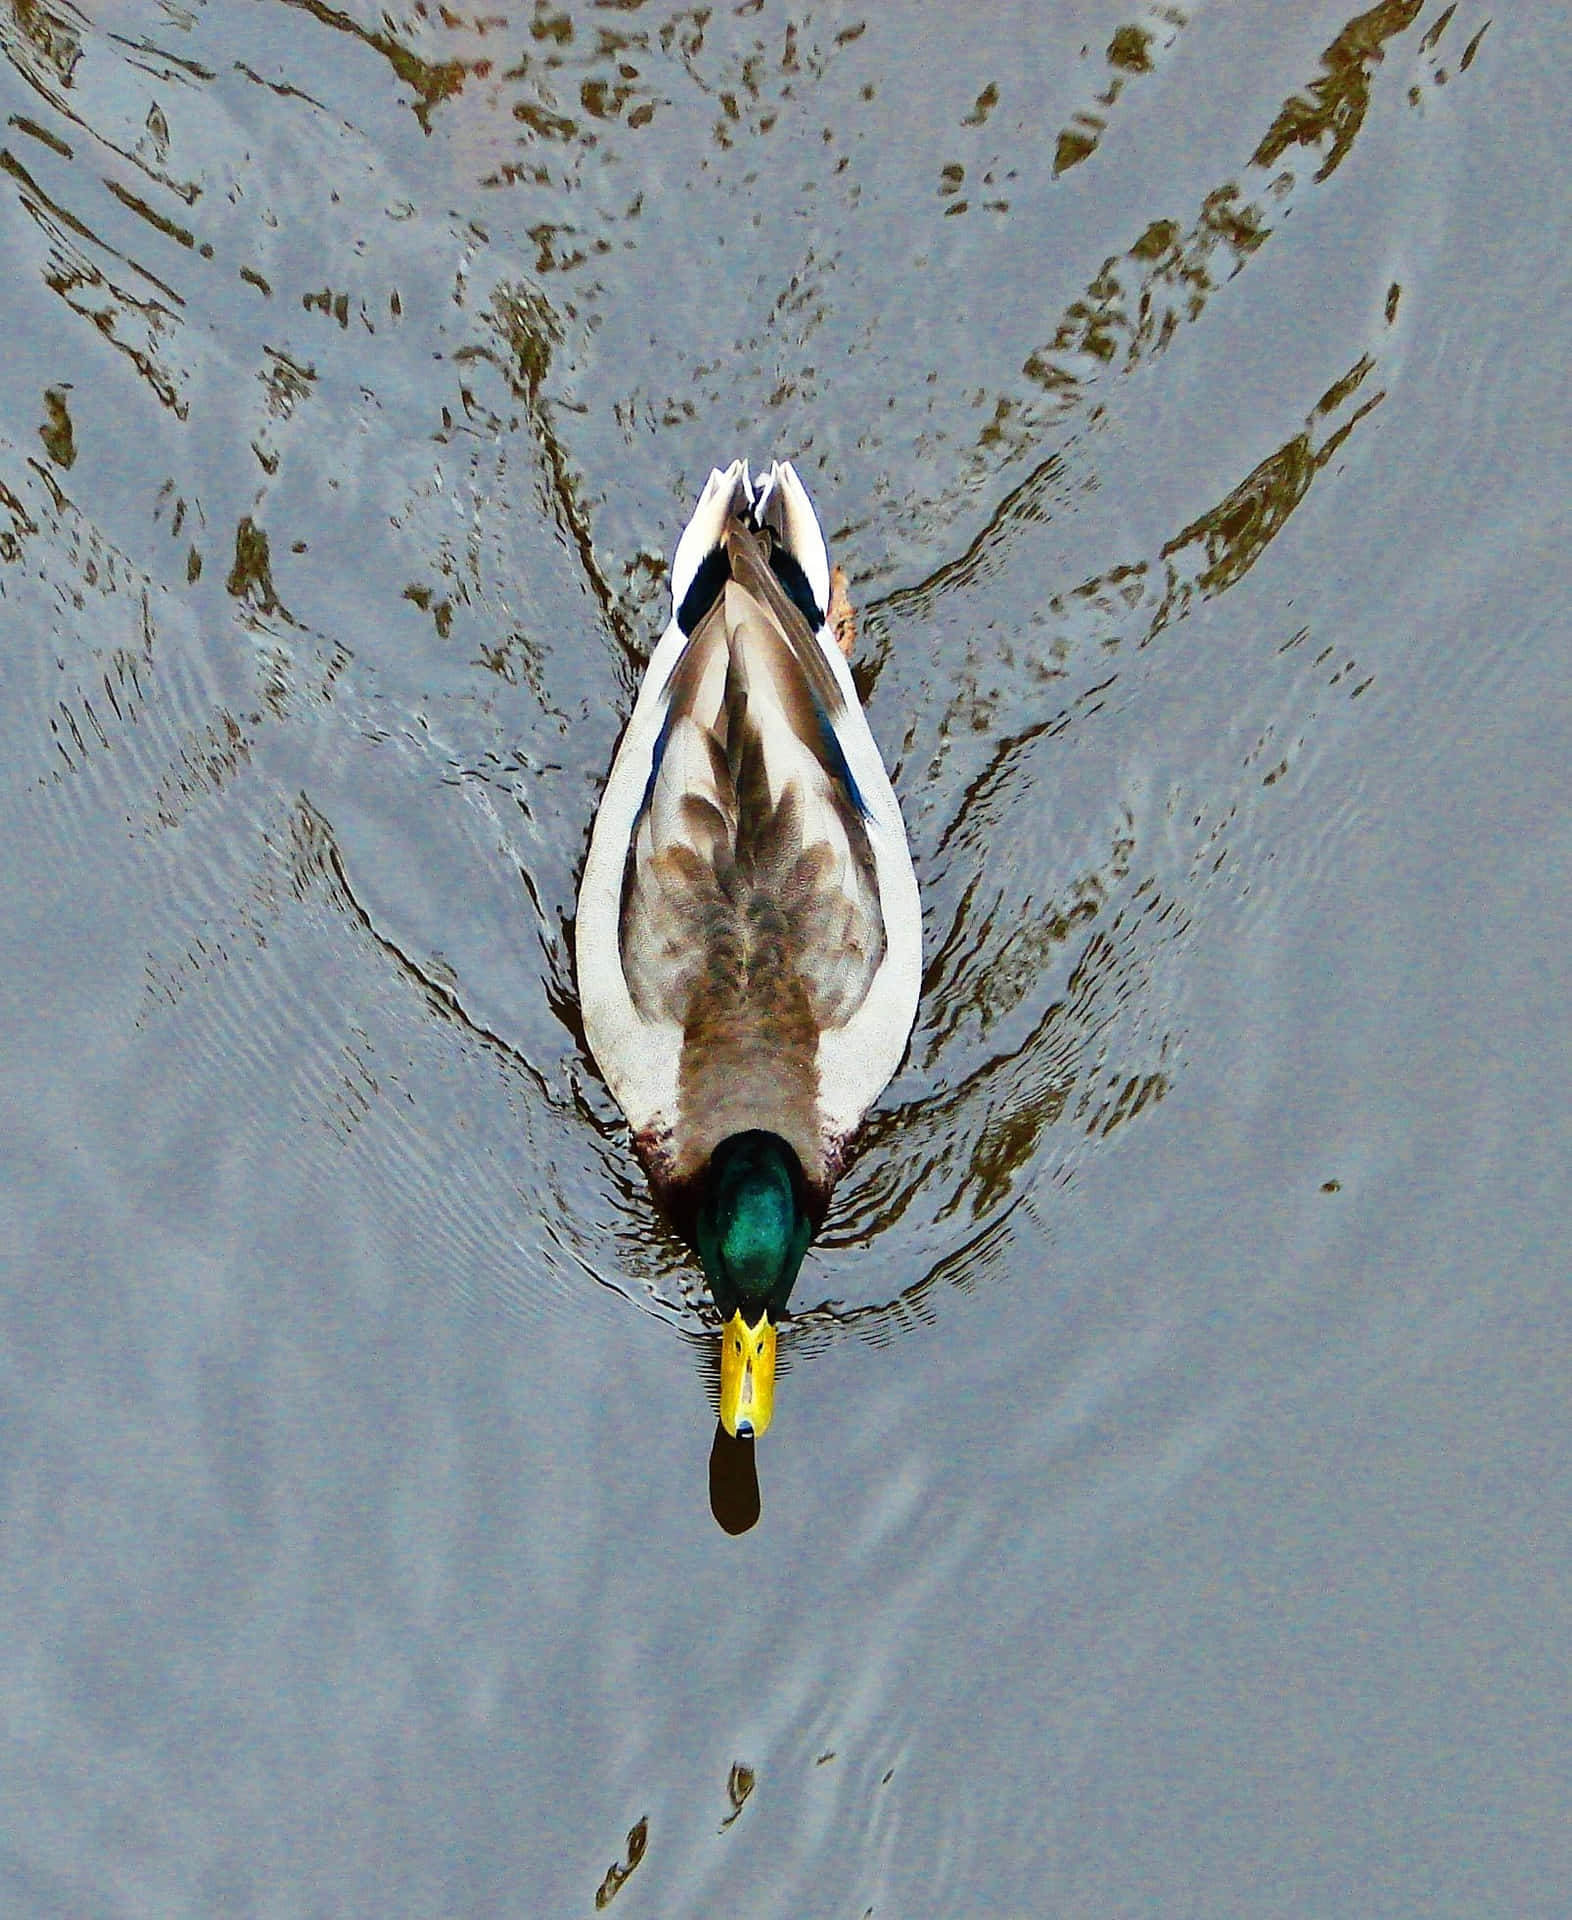 A Male Mallard Duck Swimming Through a Calm Pond